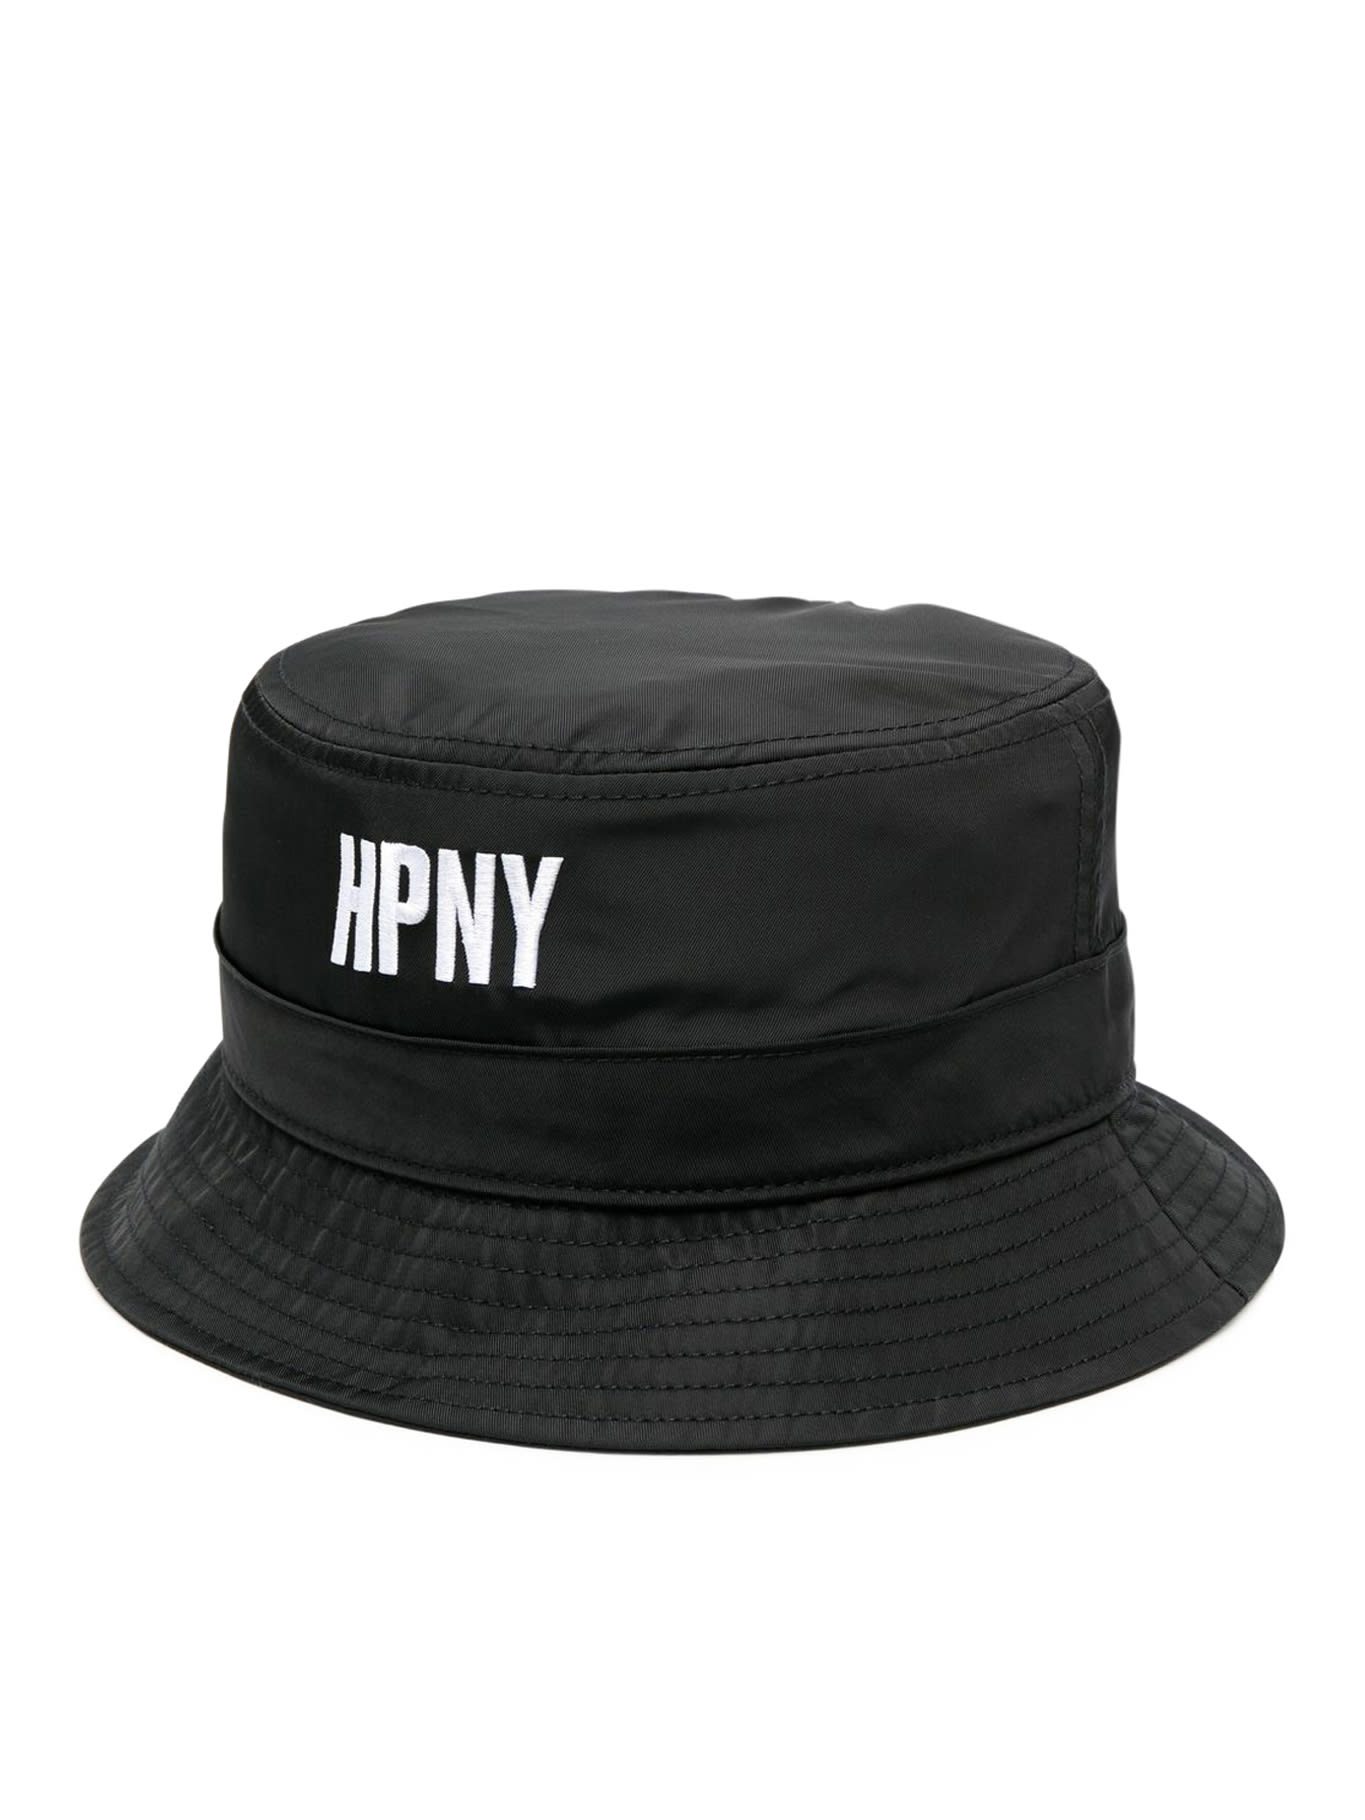 HERON PRESTON Hpny Emb Nylon Bucket Hat Black White